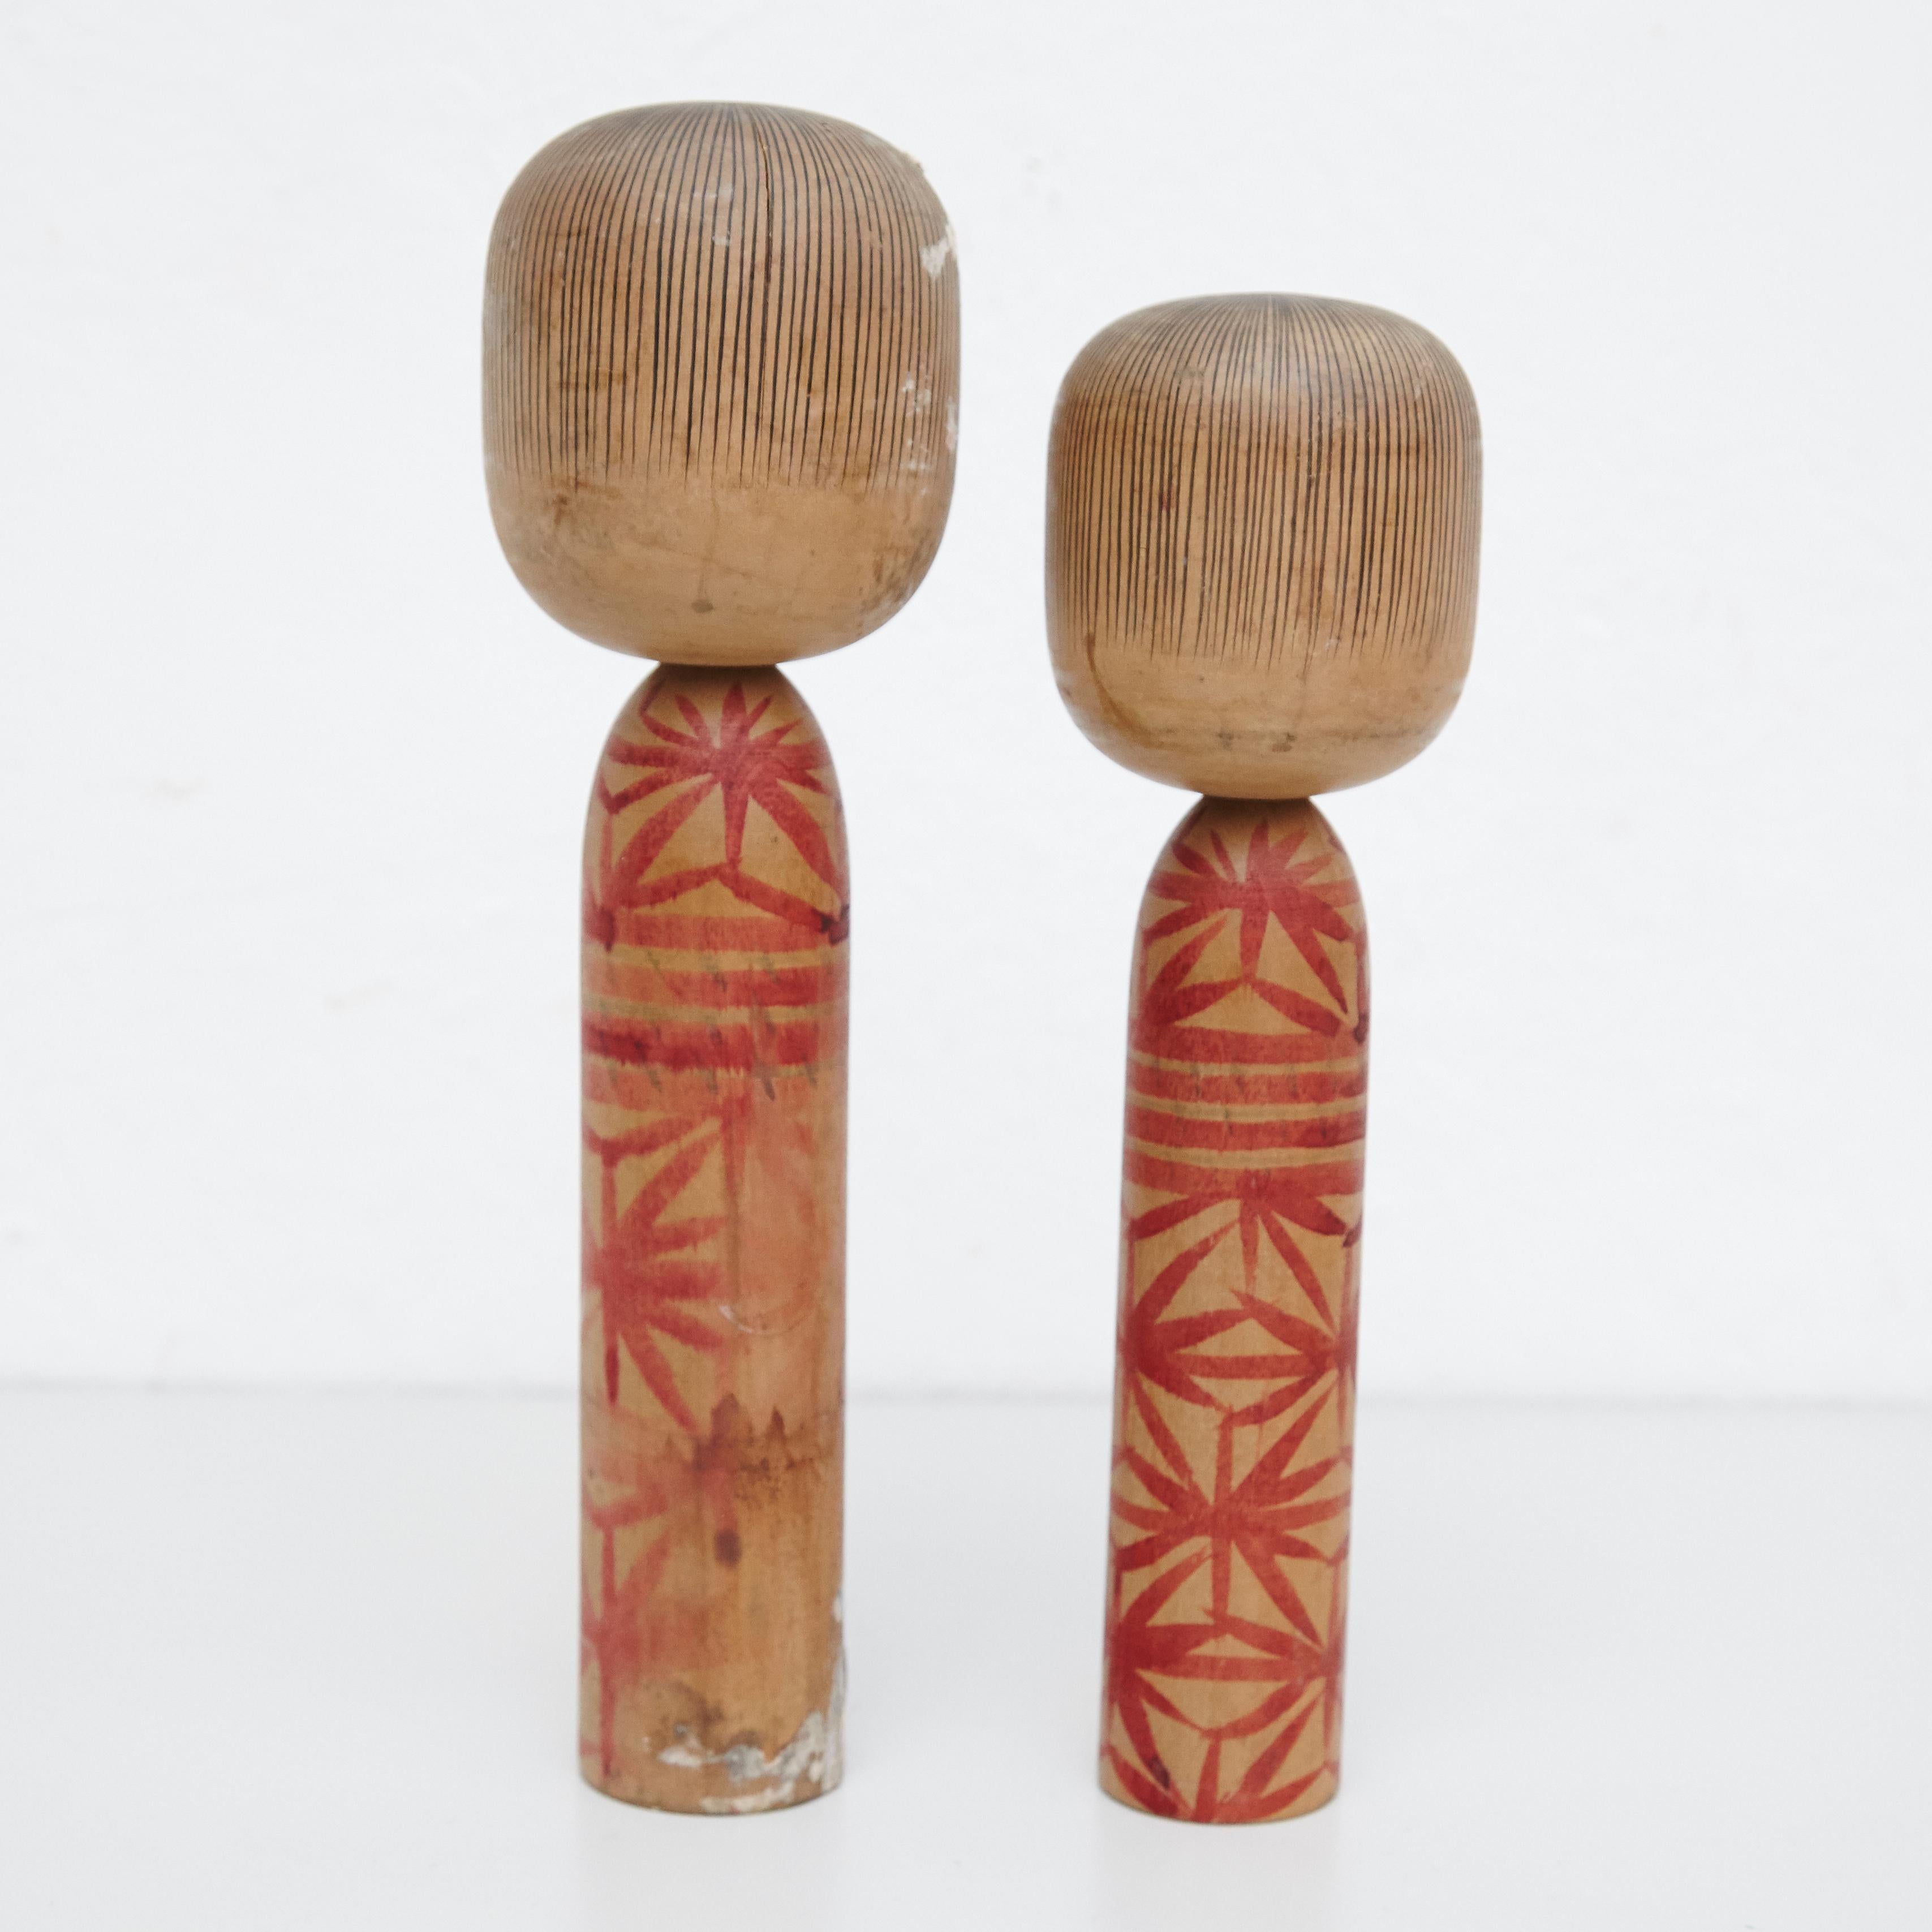 Japanische Puppen, Kokeshi genannt, aus dem frühen 20. Jahrhundert.
Provenienz aus dem nördlichen Japan.
Satz von 2.

Maßnahmen: 

30 x 8.5 cm
27 x 7.5 cm


Handgefertigt von japanischen Kunsthandwerkern aus Holz. Sie haben einen einfachen